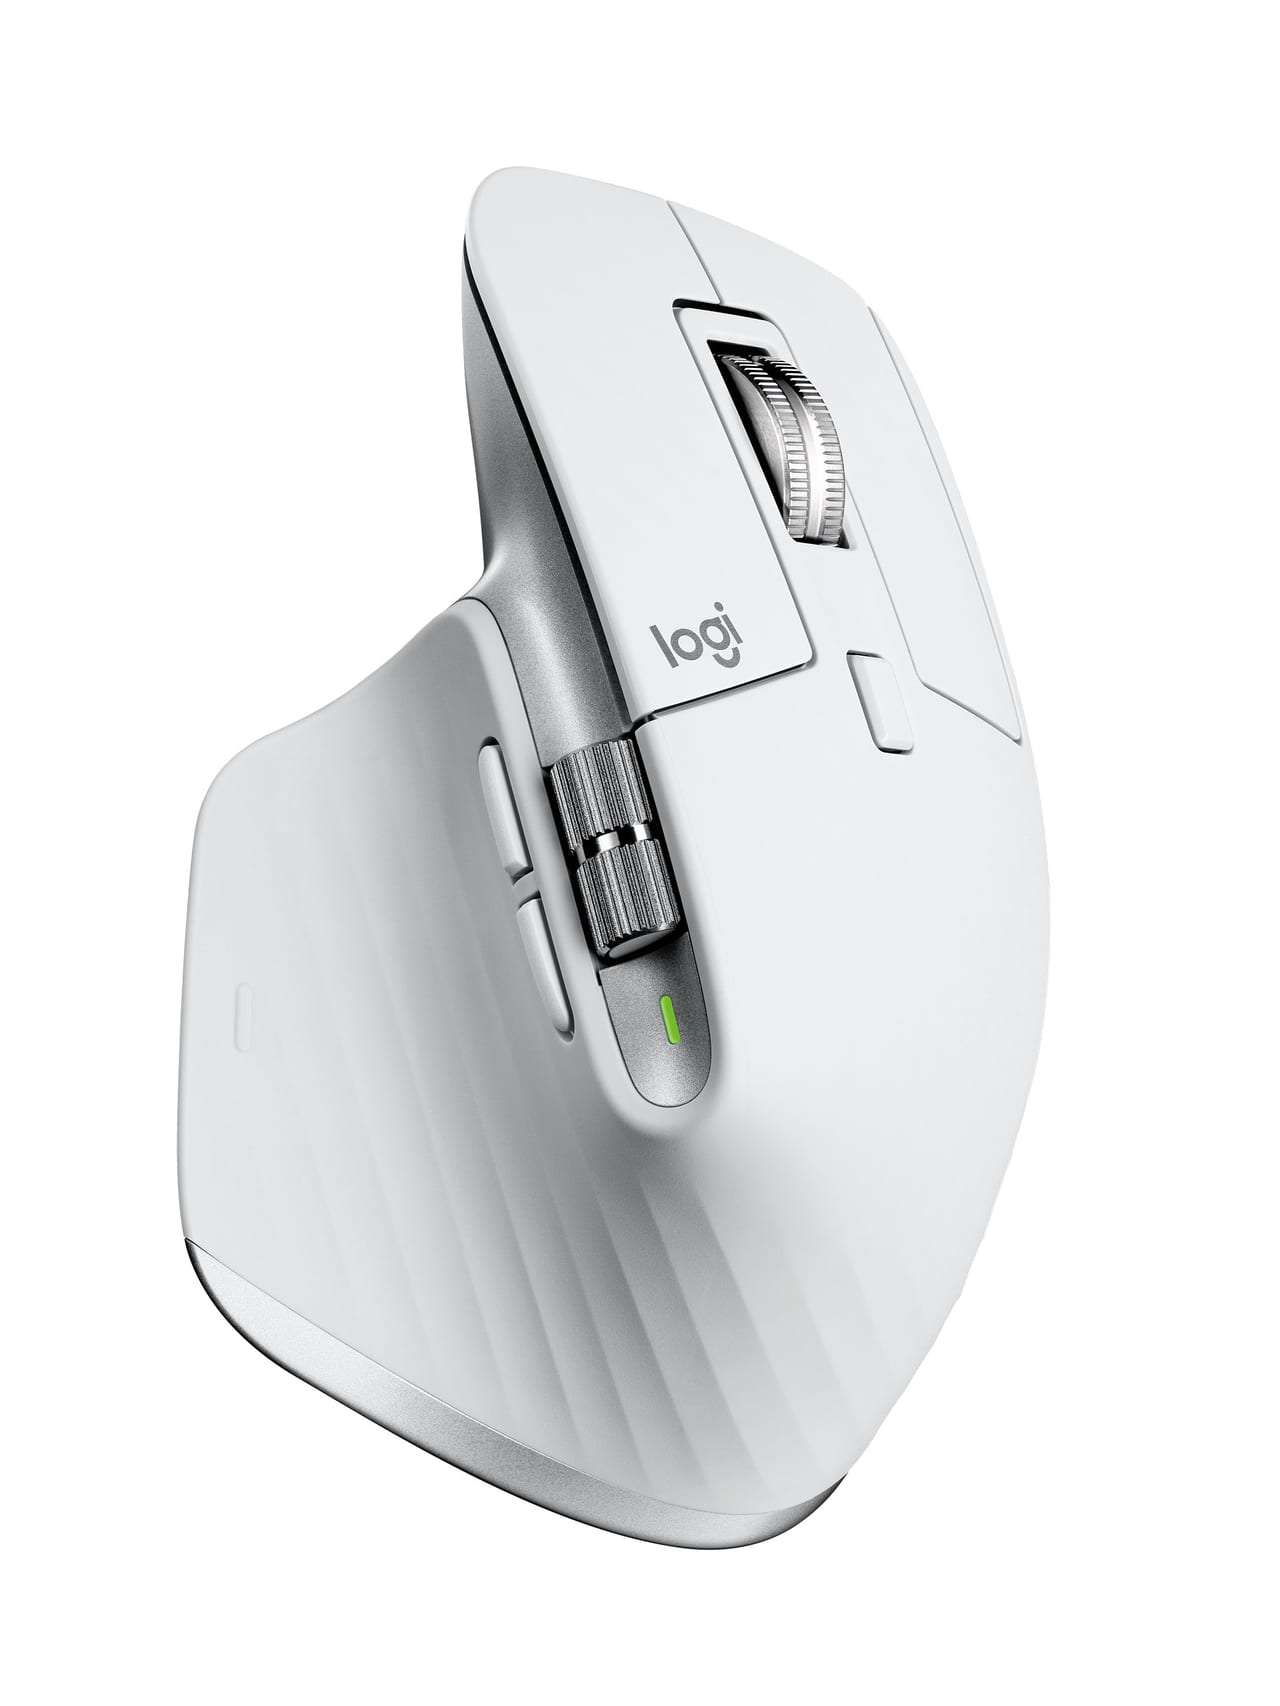 ロジクールがPC用マウス・キーボードのフラッグシップモデル3製品を発表_010